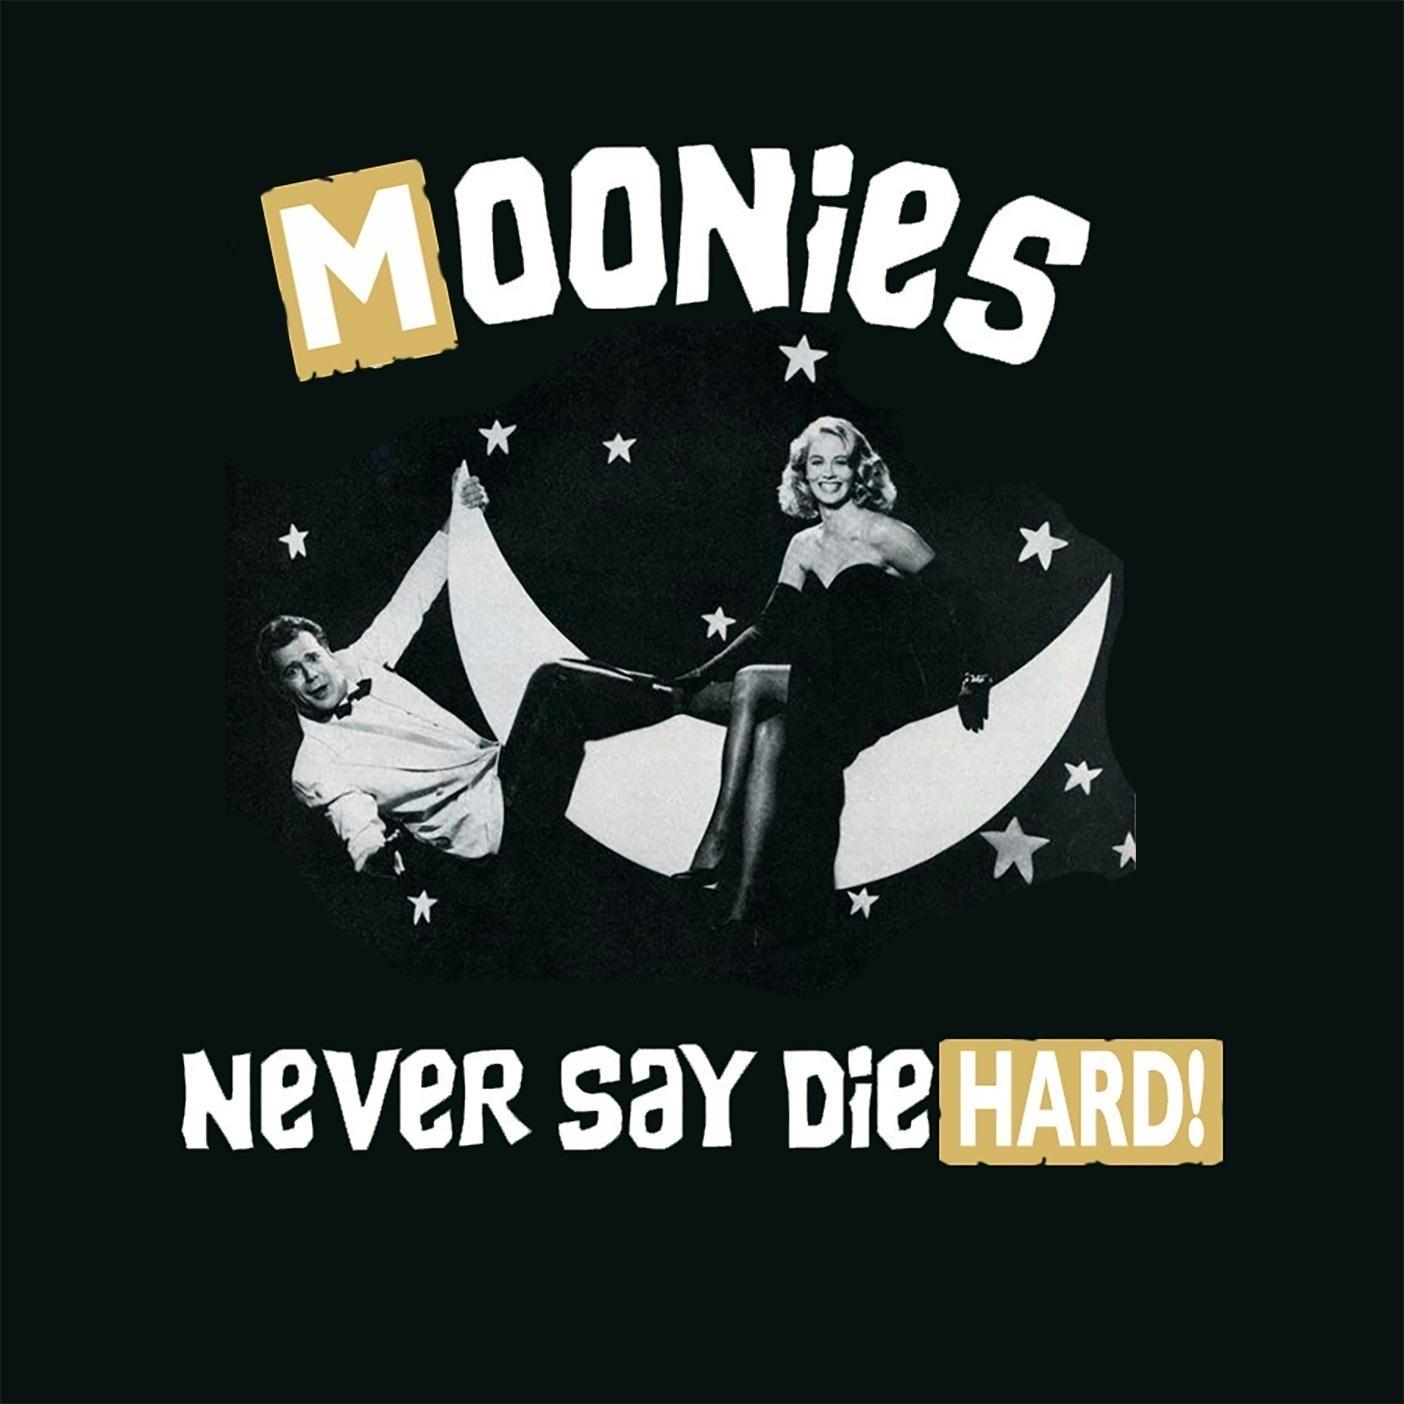 Moonies Never Say Die Hard!